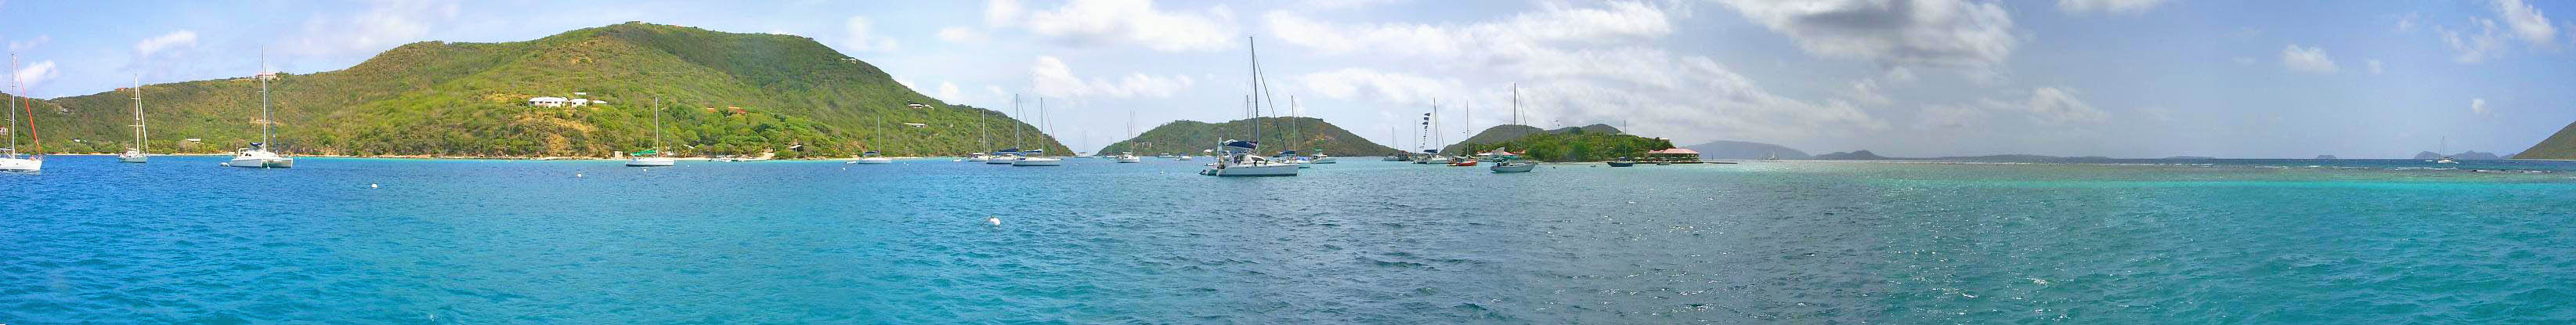 Panorama of Marina Cay